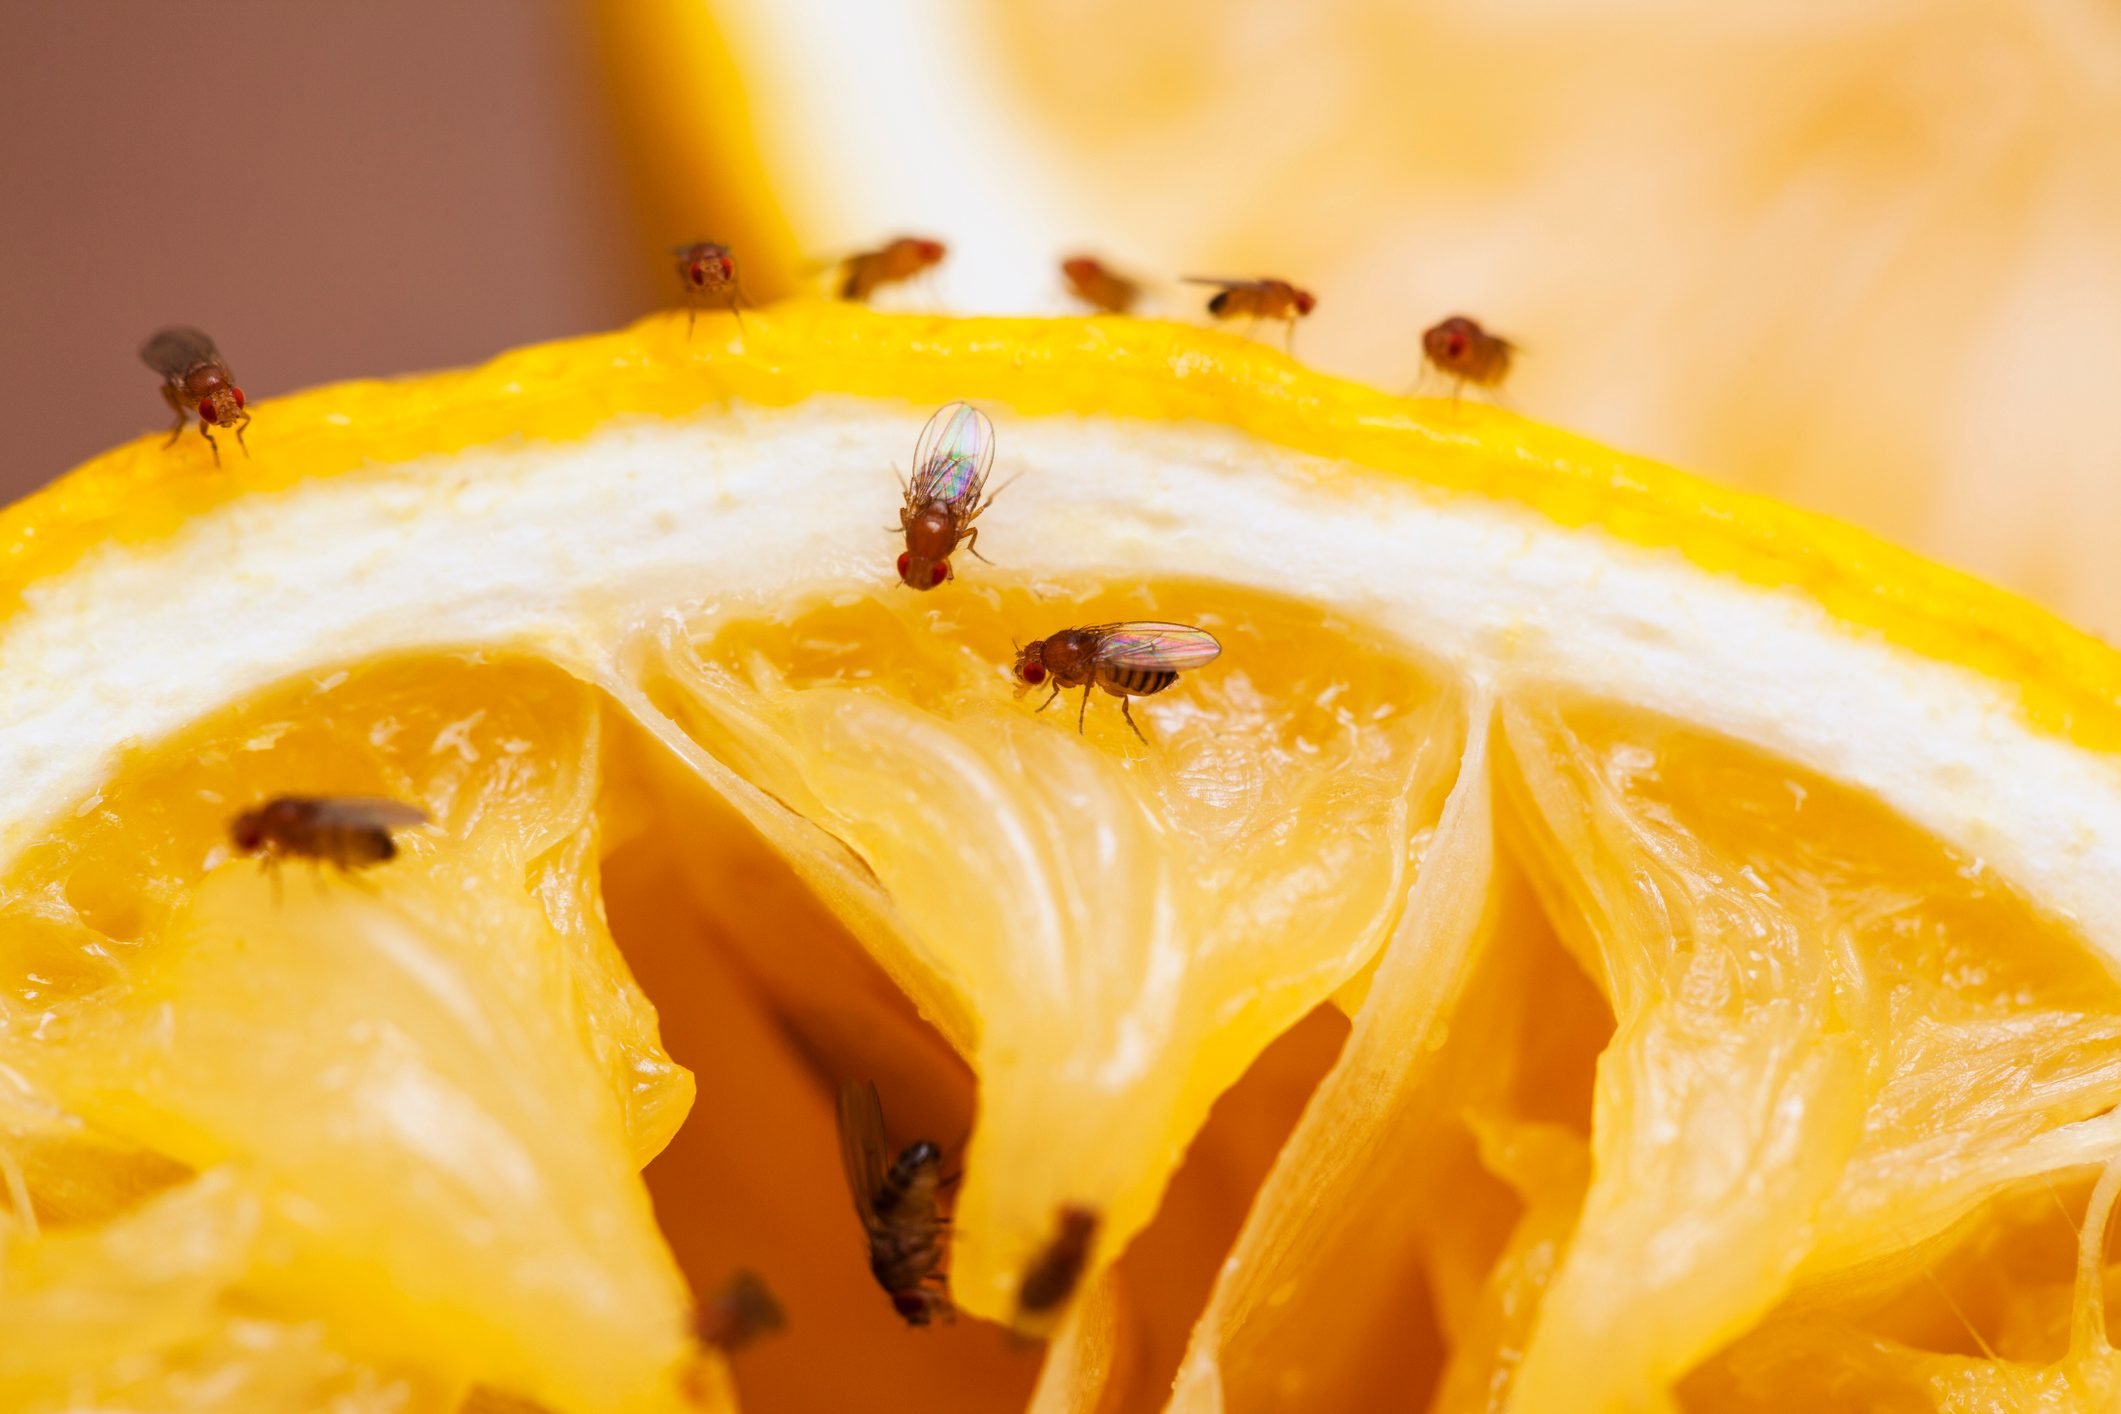 Getting Rid of Fruit Flies